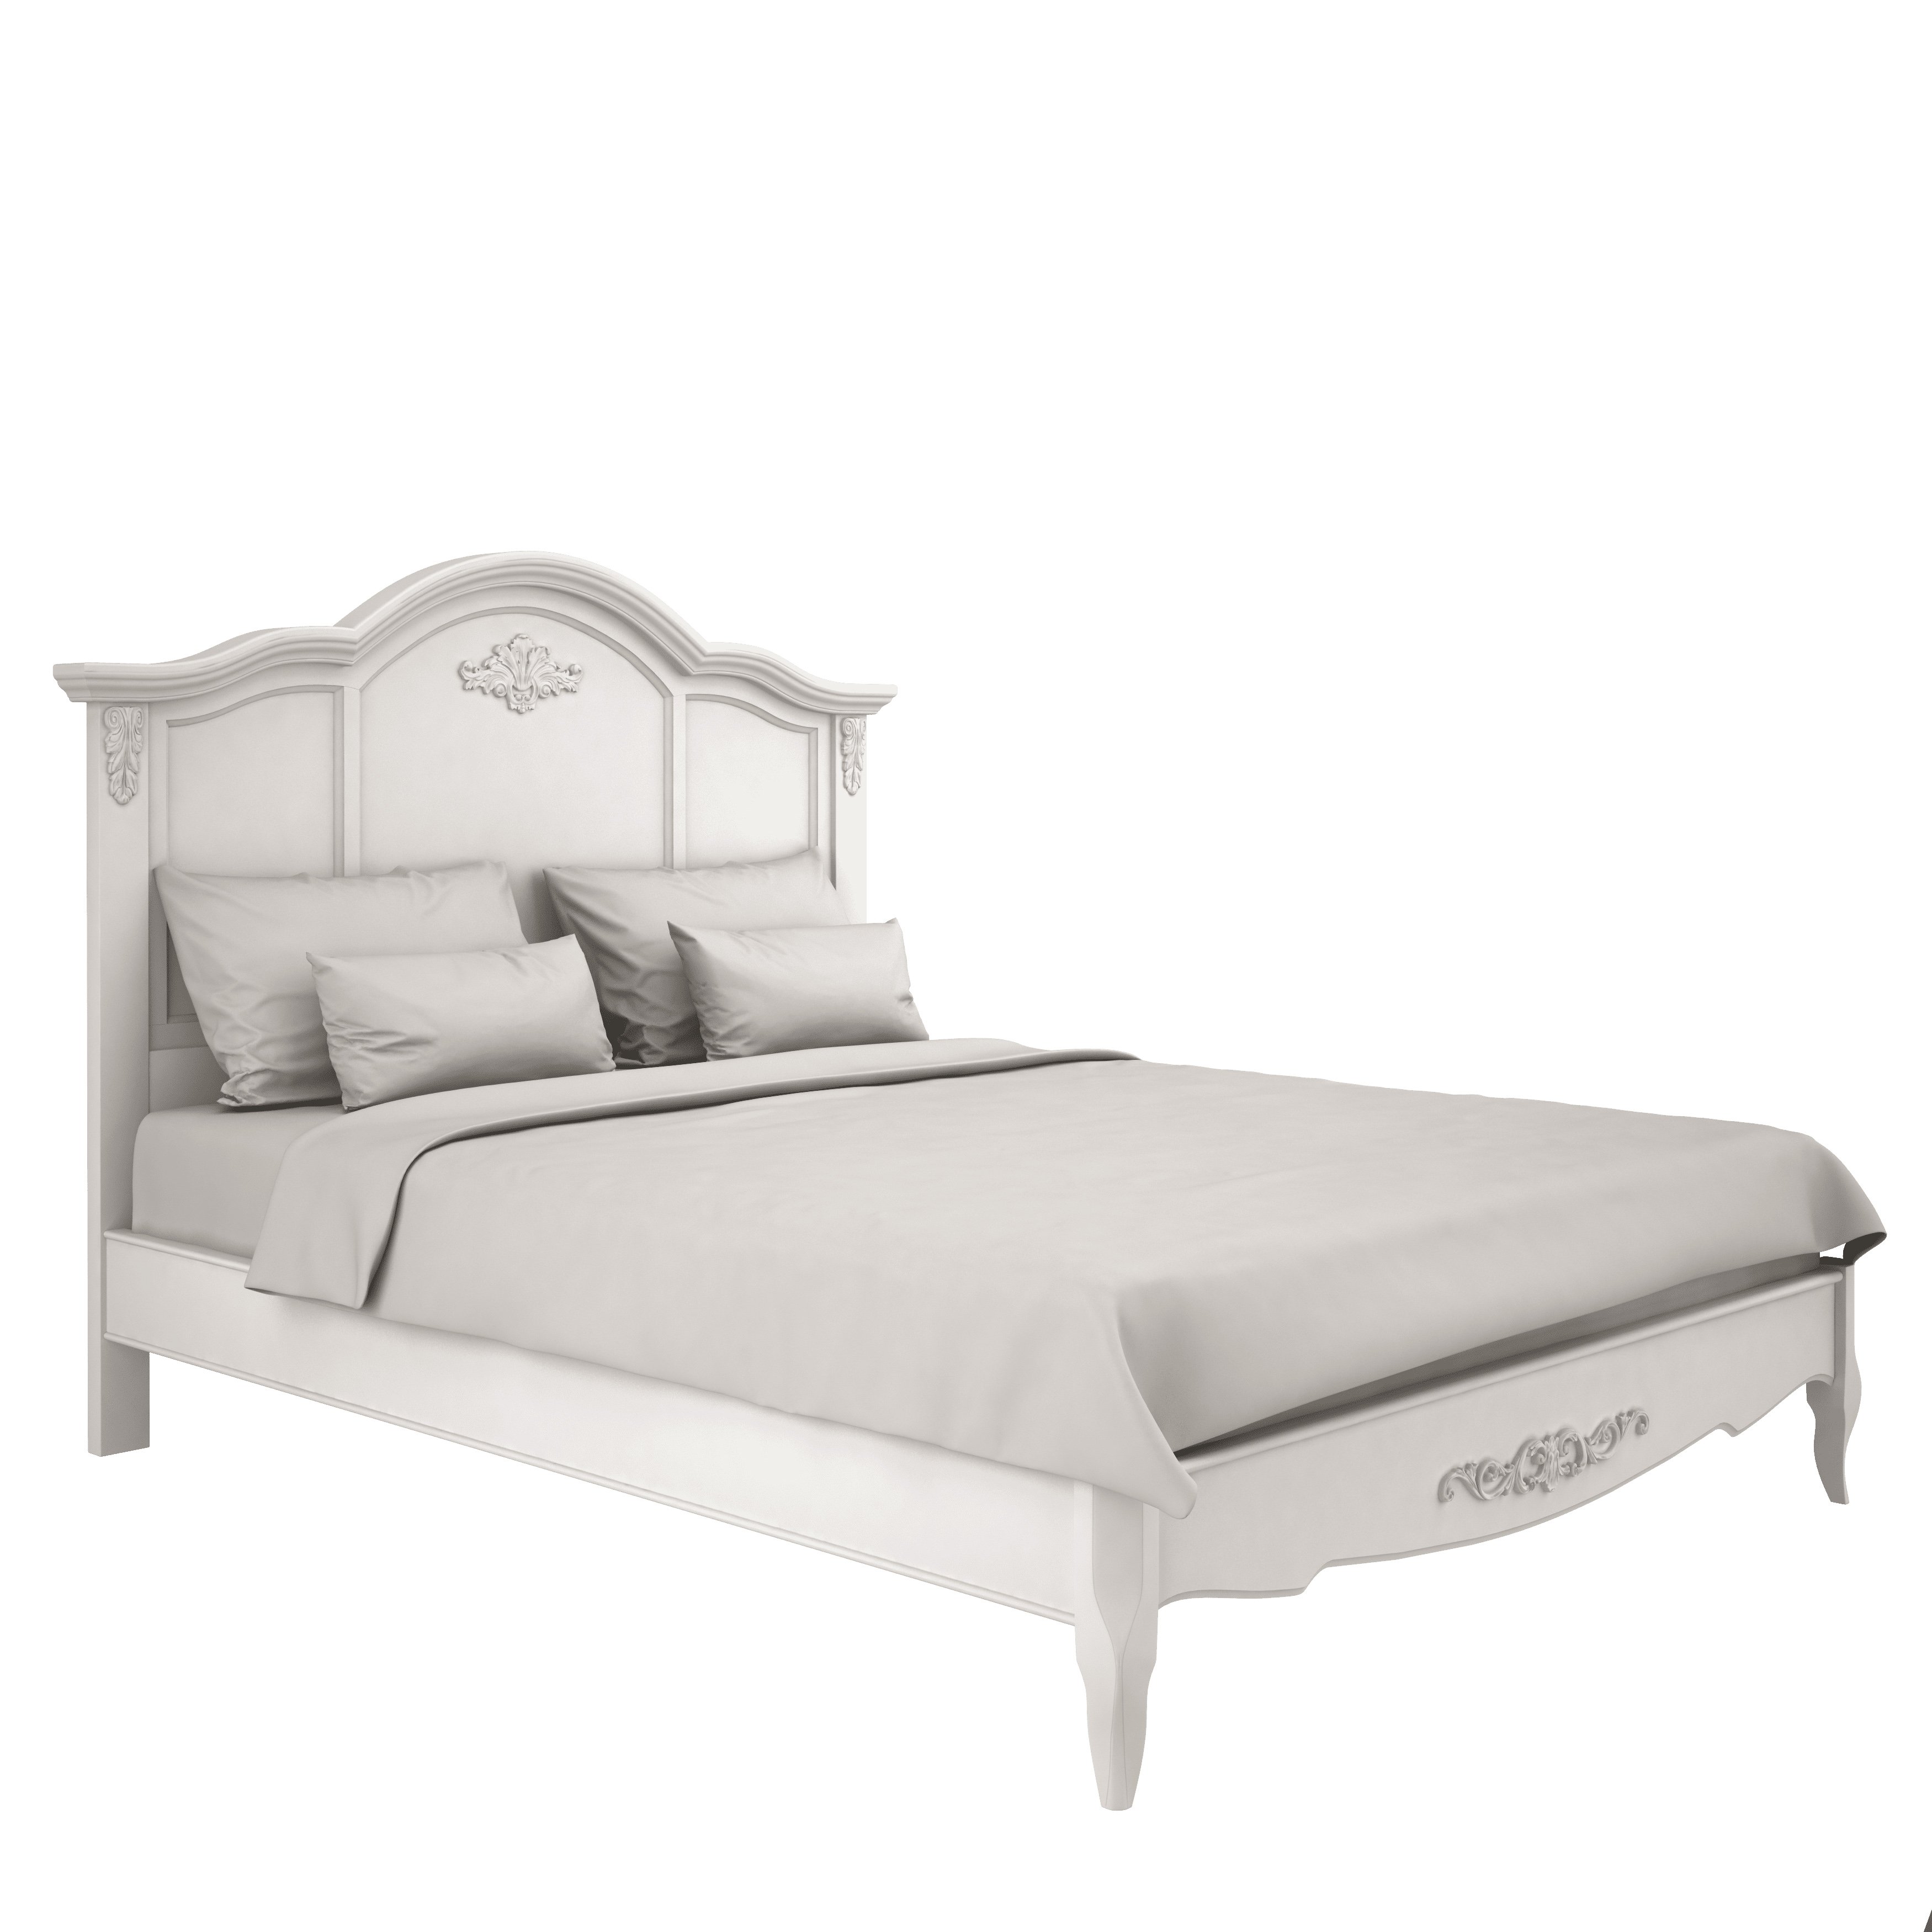 Кровать Aletan Provence, двуспальная, 180x200 см, цвет: слоновая кость (B208)B208